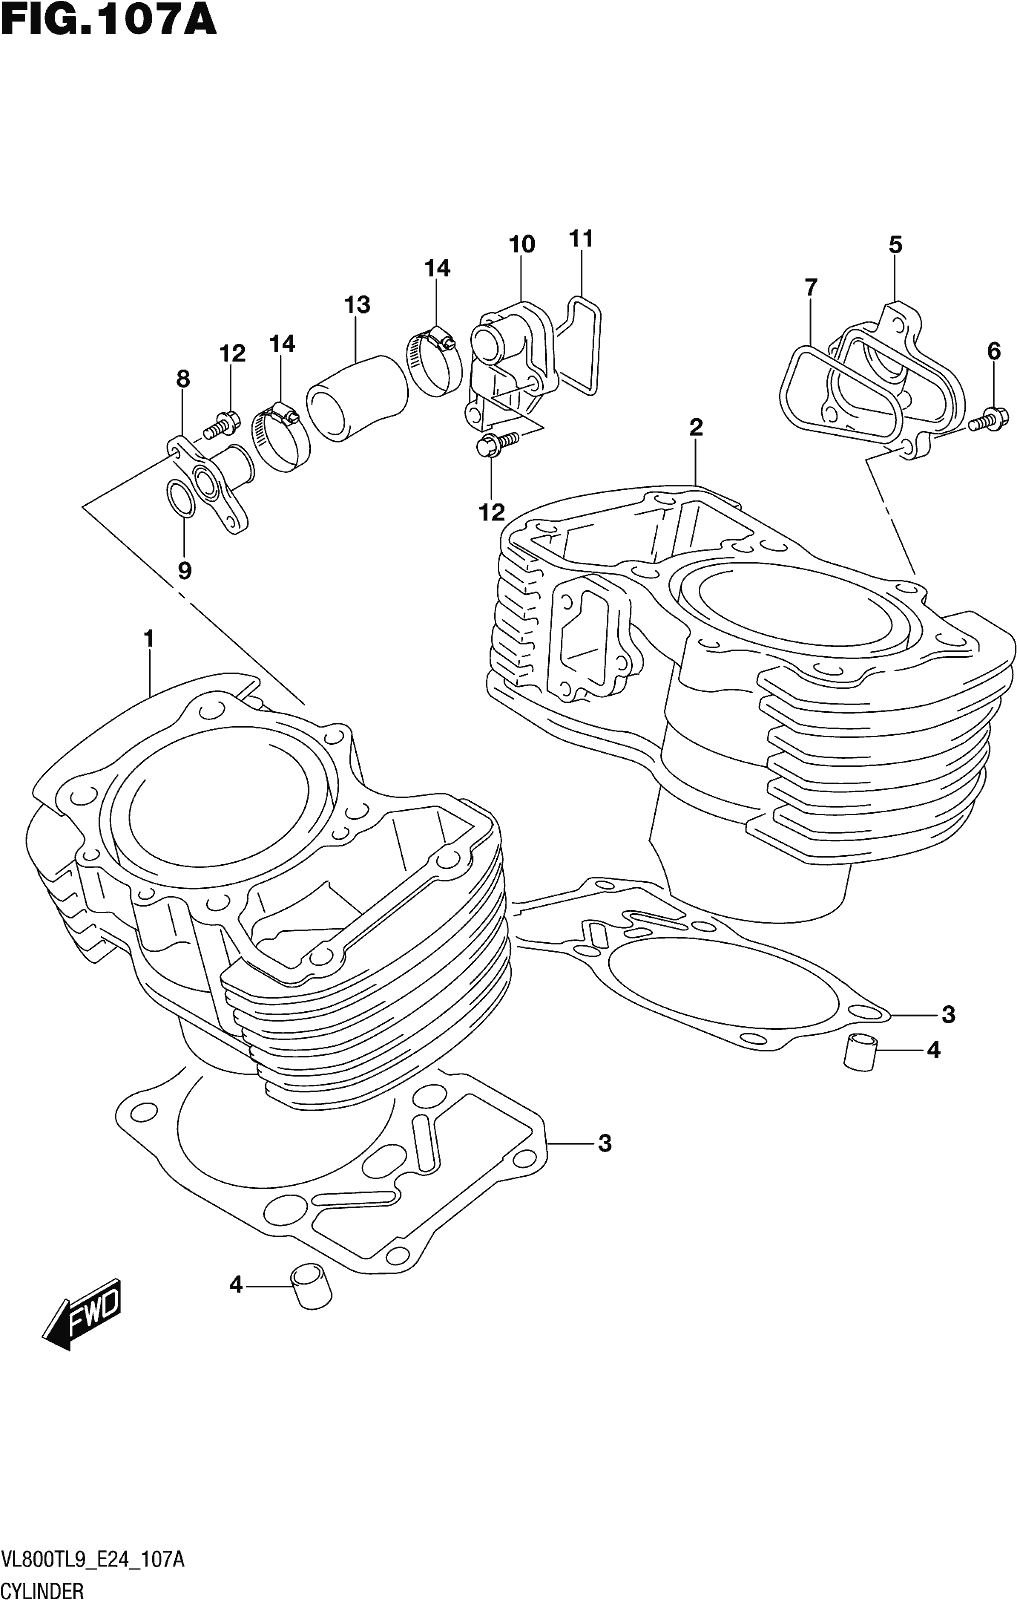 Alle Teile für das Fig. 107a Cylinder des Suzuki VL 800T 2019